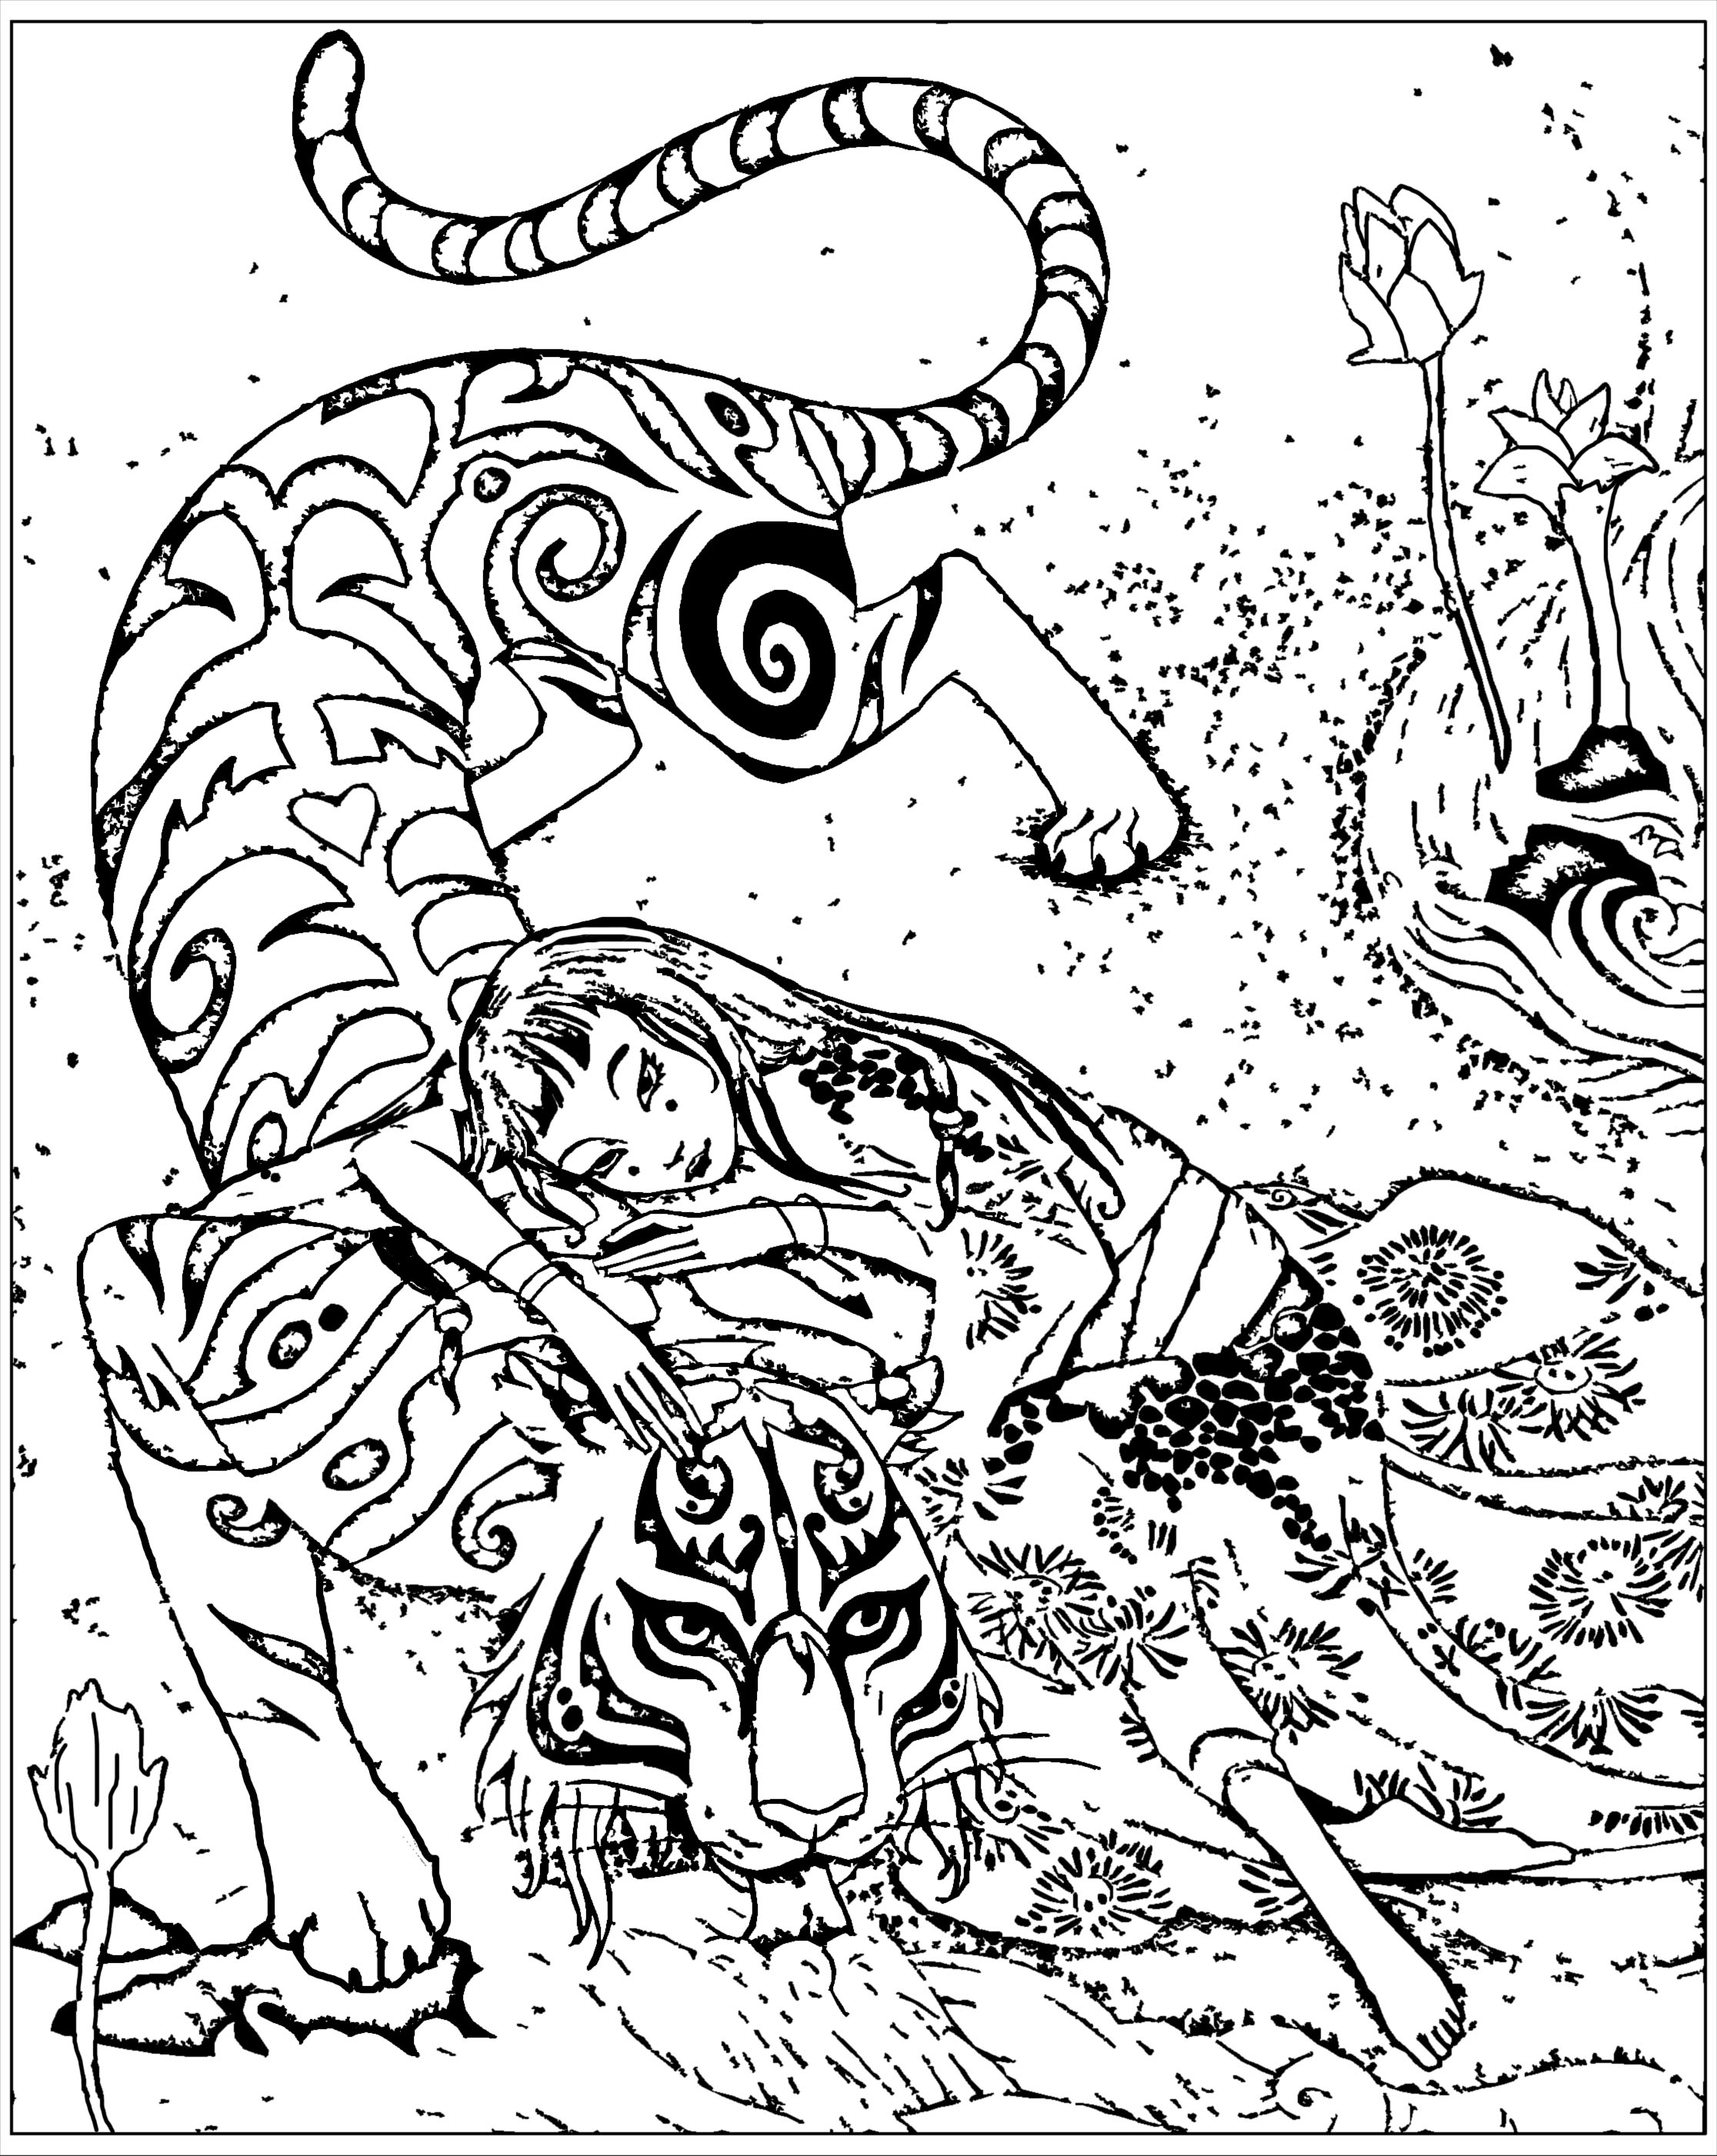 Jogo de colorir inspirado no livro Le tigre dévoué, de Qi feng Shen. Qi feng Shen é um escritor chinês mais conhecido pela sua coletânea de cem histórias que misturam o sobrenatural com as realidades sociais da época ('Xieduo', 1792): textos com personagens que evoluem em enredos cheios de delicadeza e inteligência.